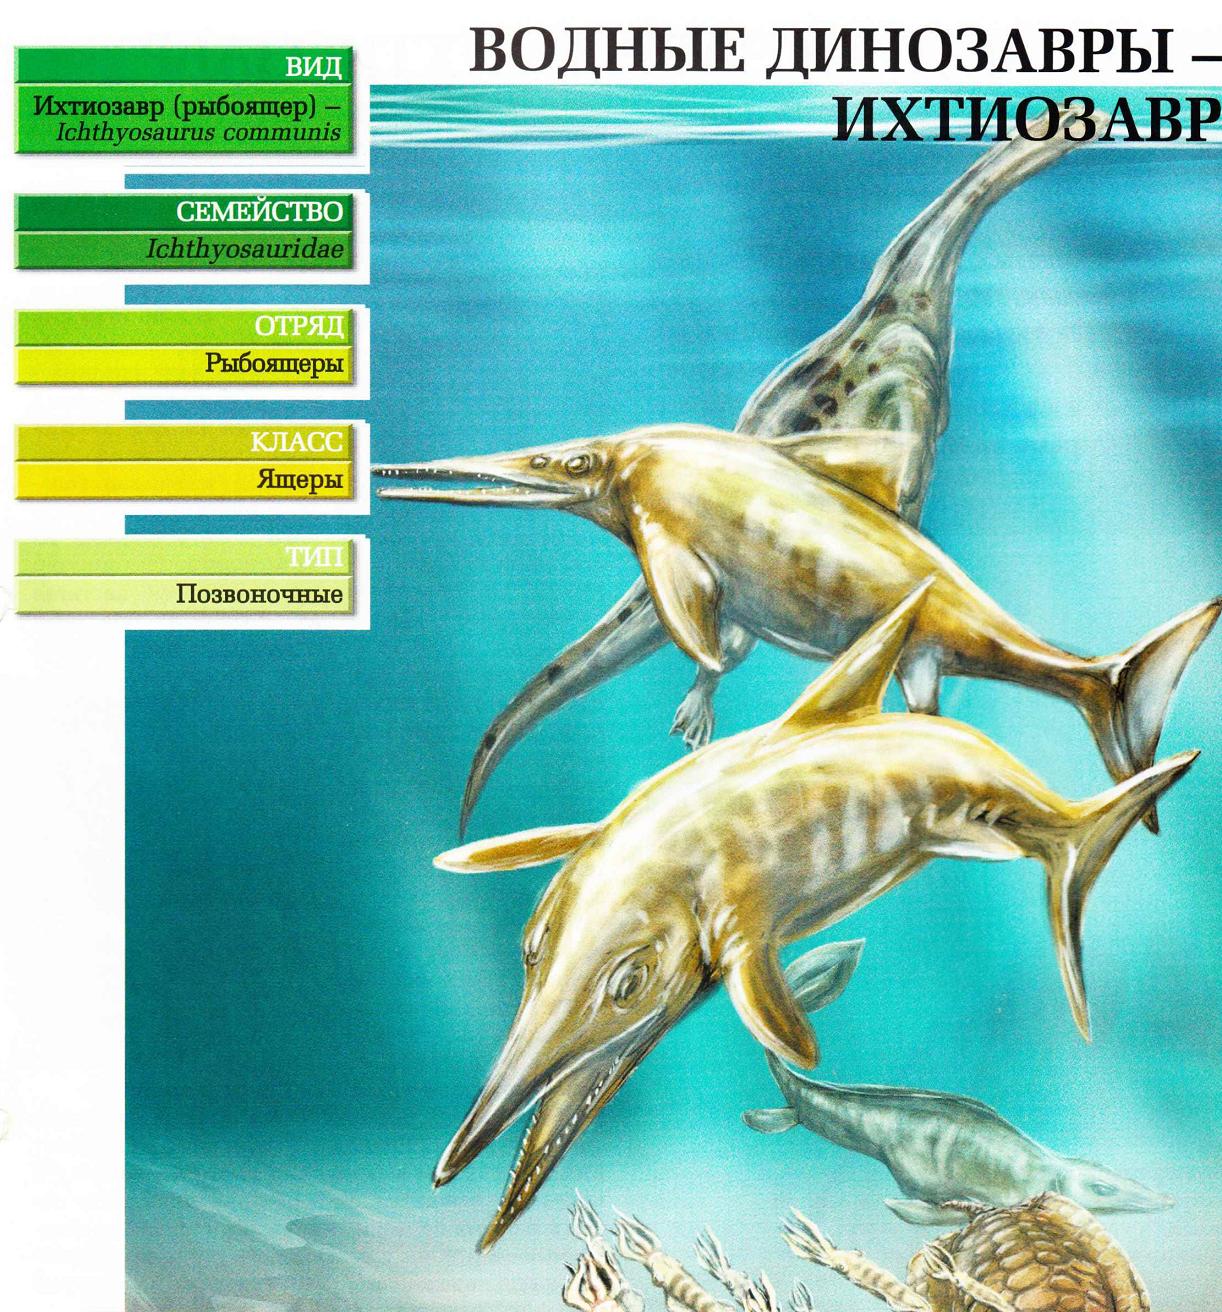 Систематика (научная классификация) ихтиозавра. Ichthyosaurus communis.